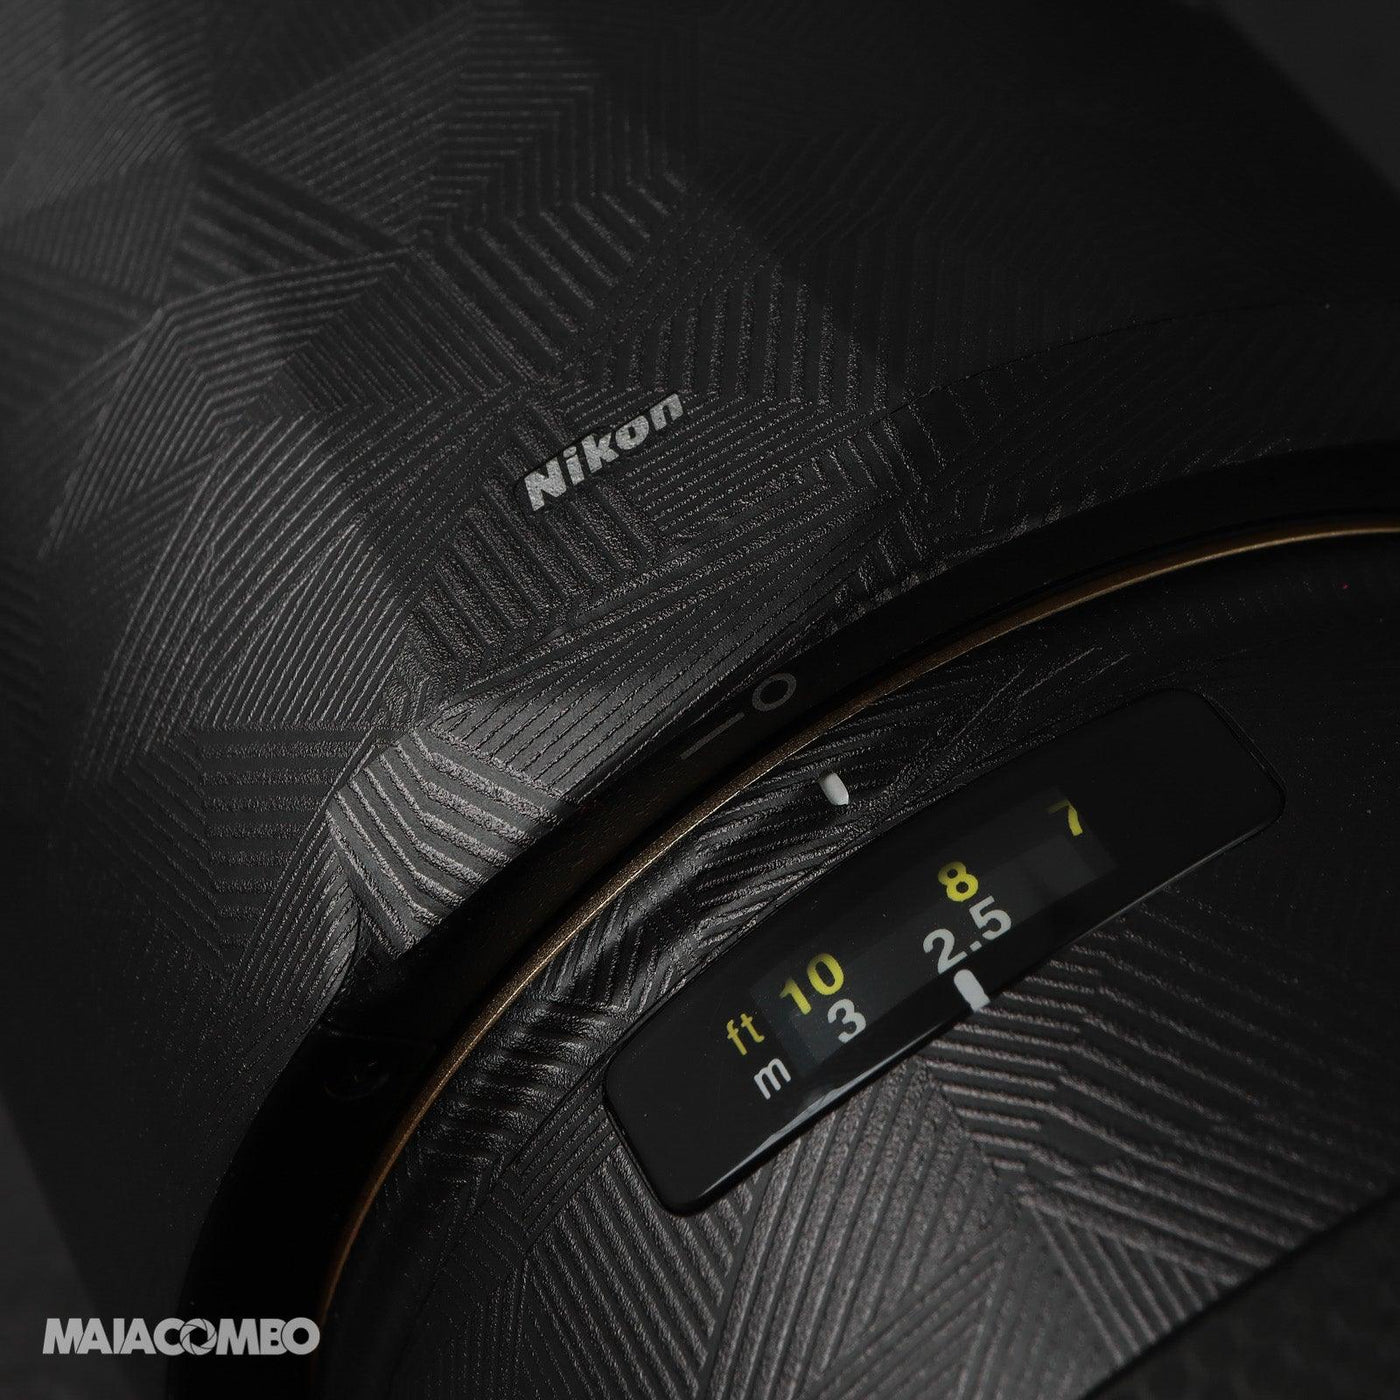 Nikon AF-S VR 70-200mm F2.8G IF-ED (5th) Lens Skin - MAIACOMBO